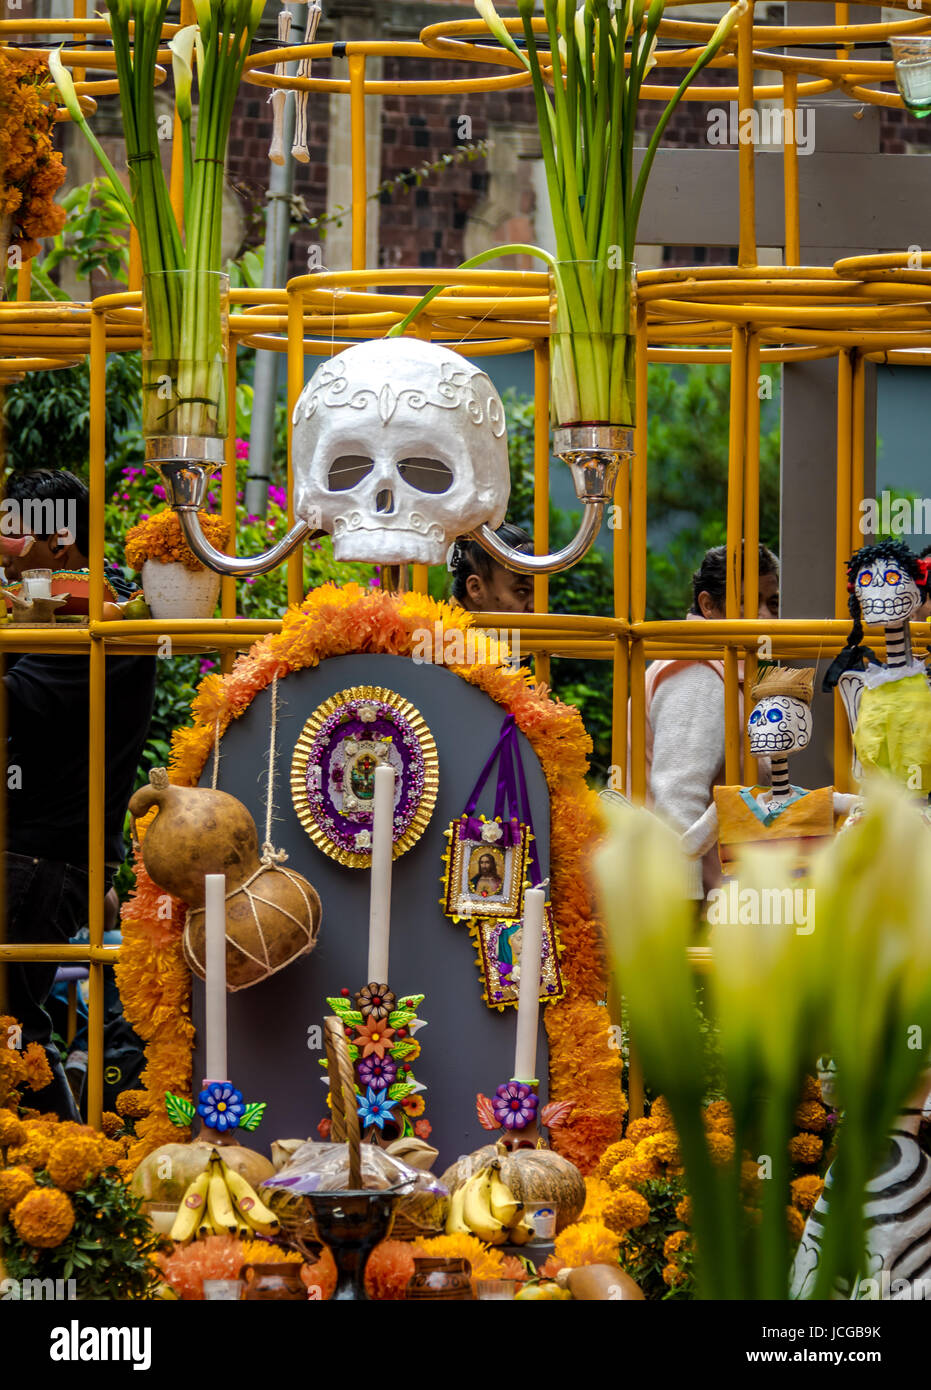 Day of the Dead (Dia de los Muertos) Decoration - Mexico City, Mexico Stock Photo